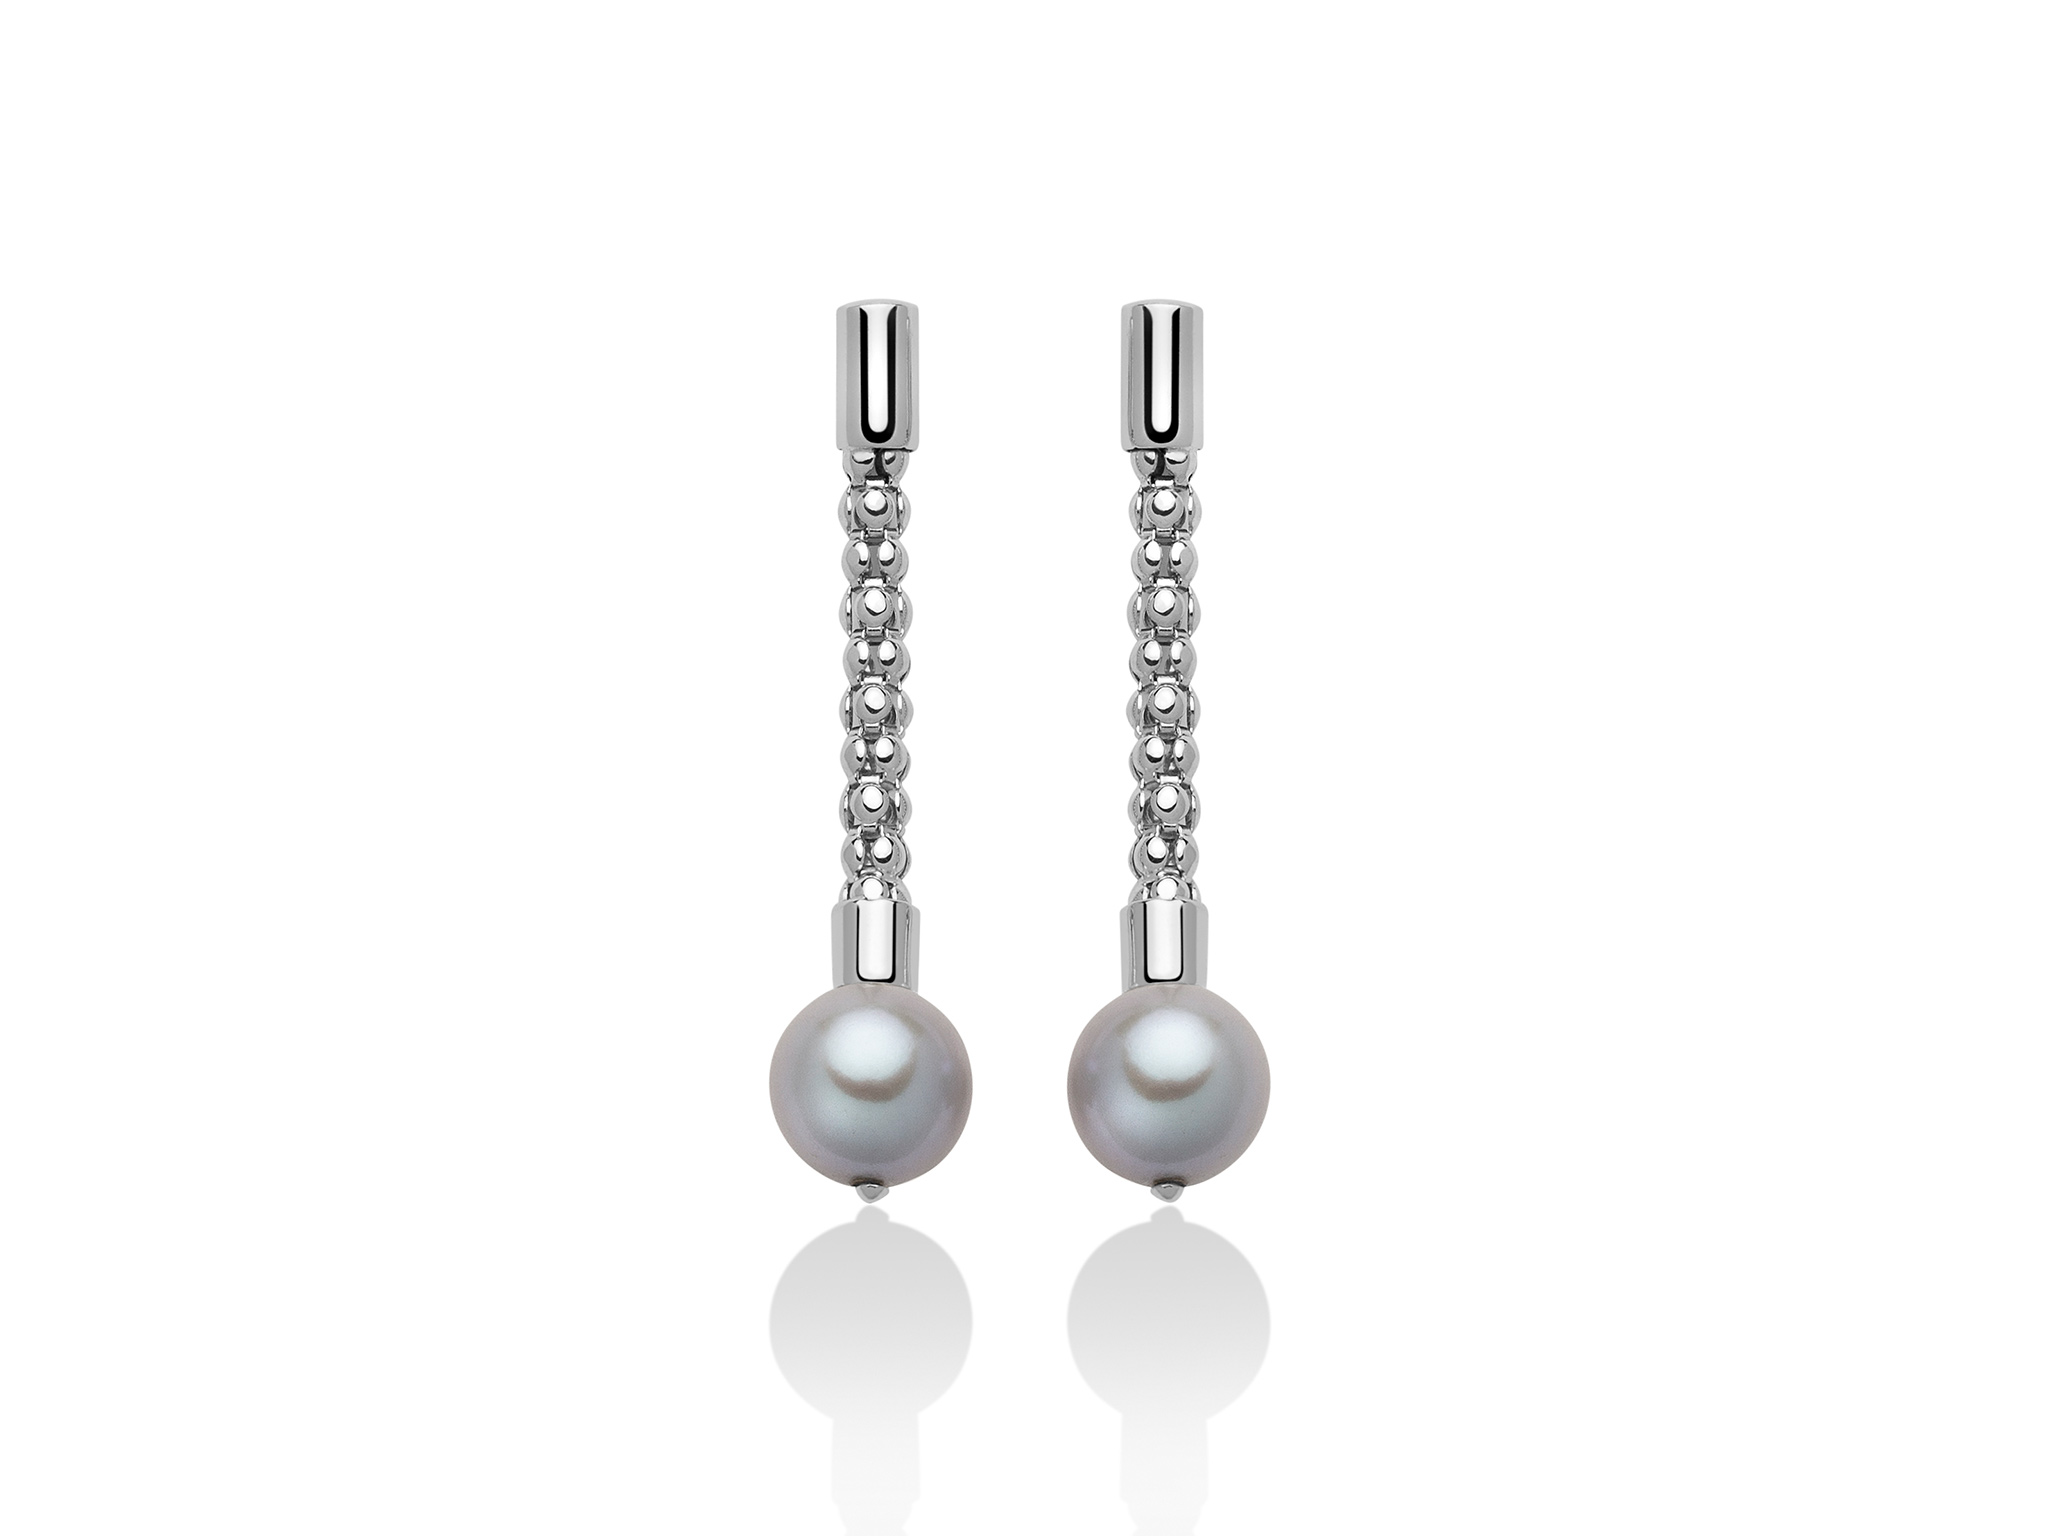 Orecchini pendenti con maglia coreana, in argento con perle - PER2409